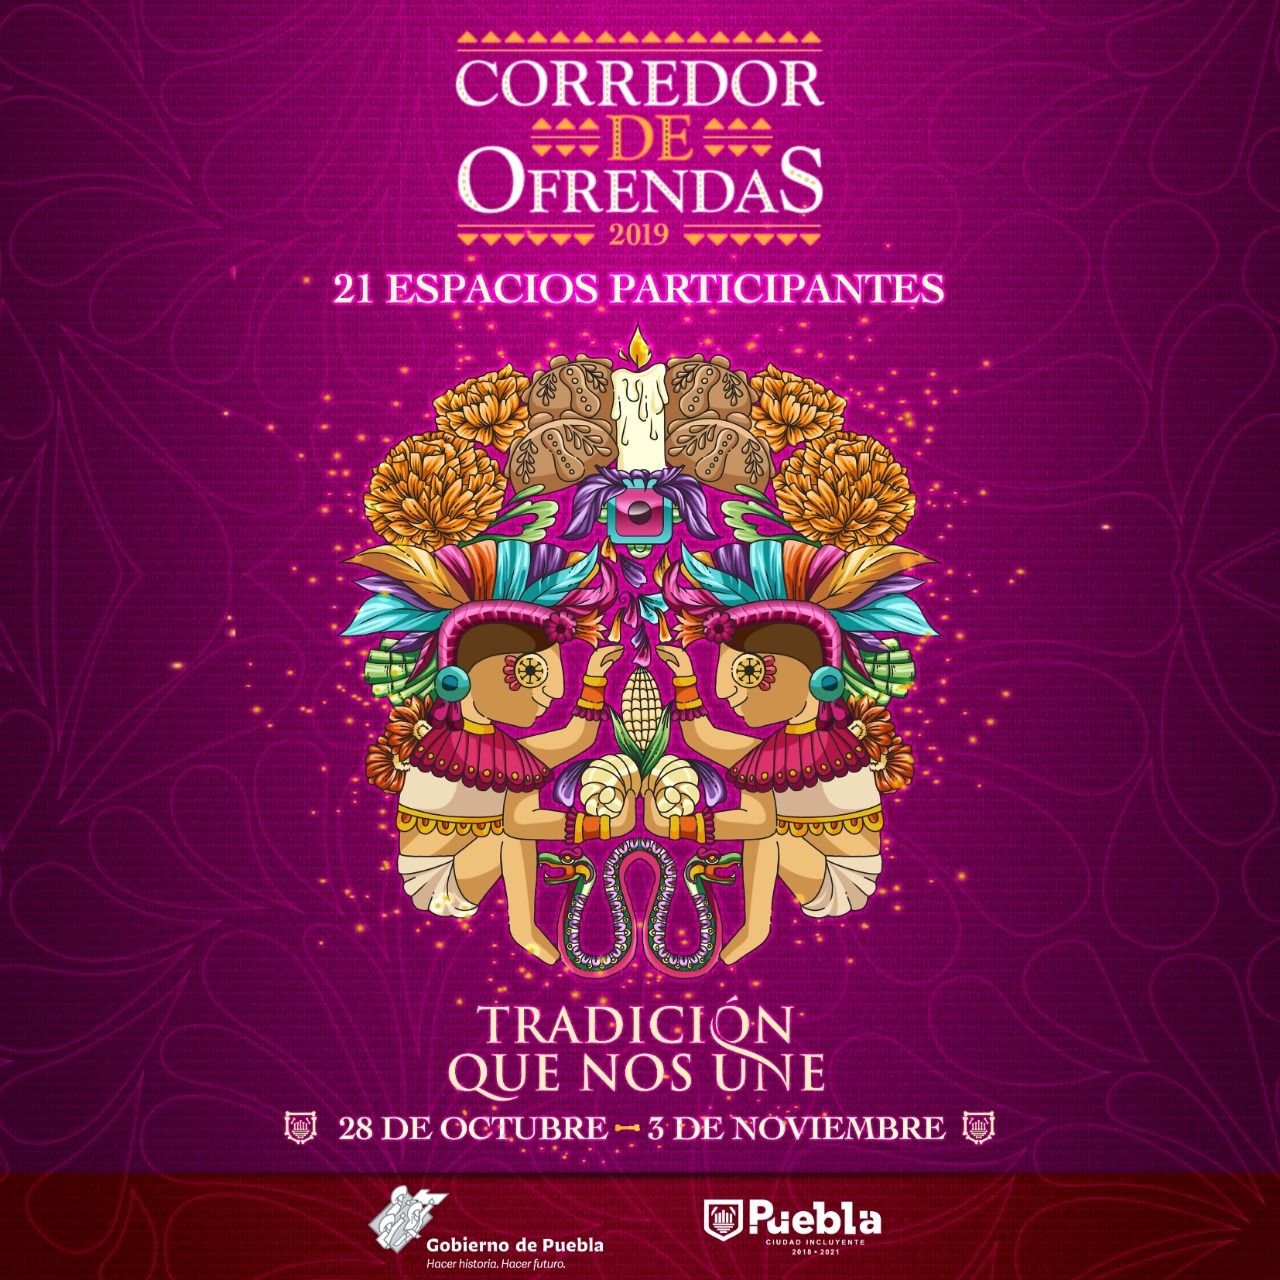 Festival de ofrendas ofrece la ciudad de Puebla, ven a disfrutarlas